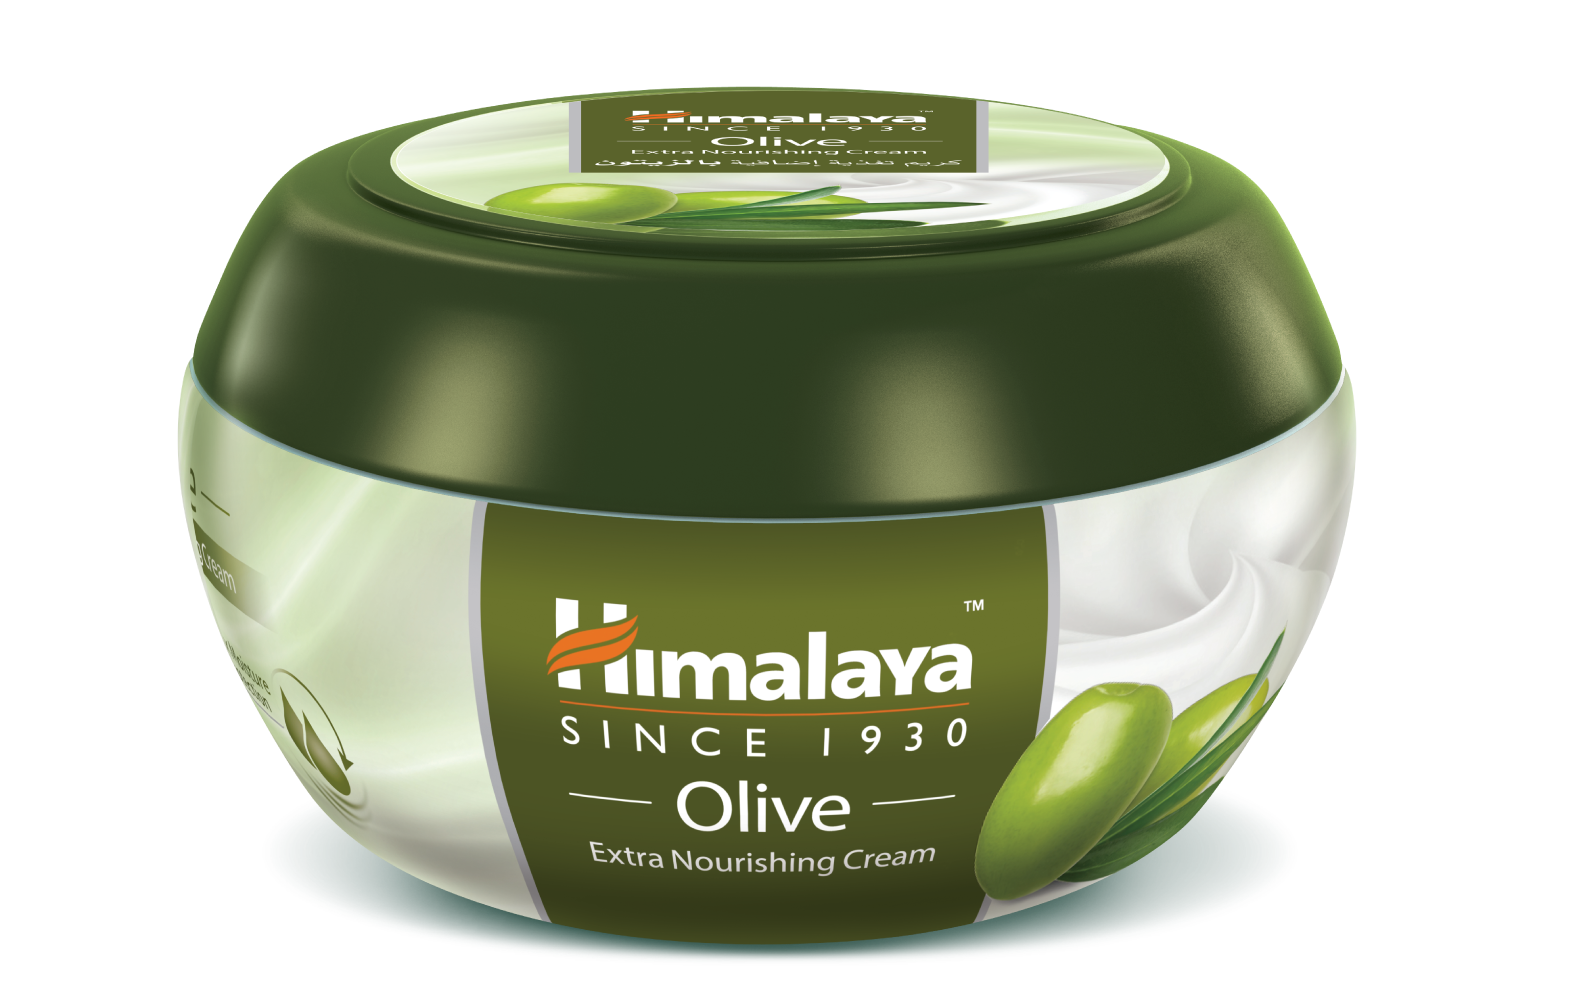 crema extra nutritiva de himalaya con aceite de oliva